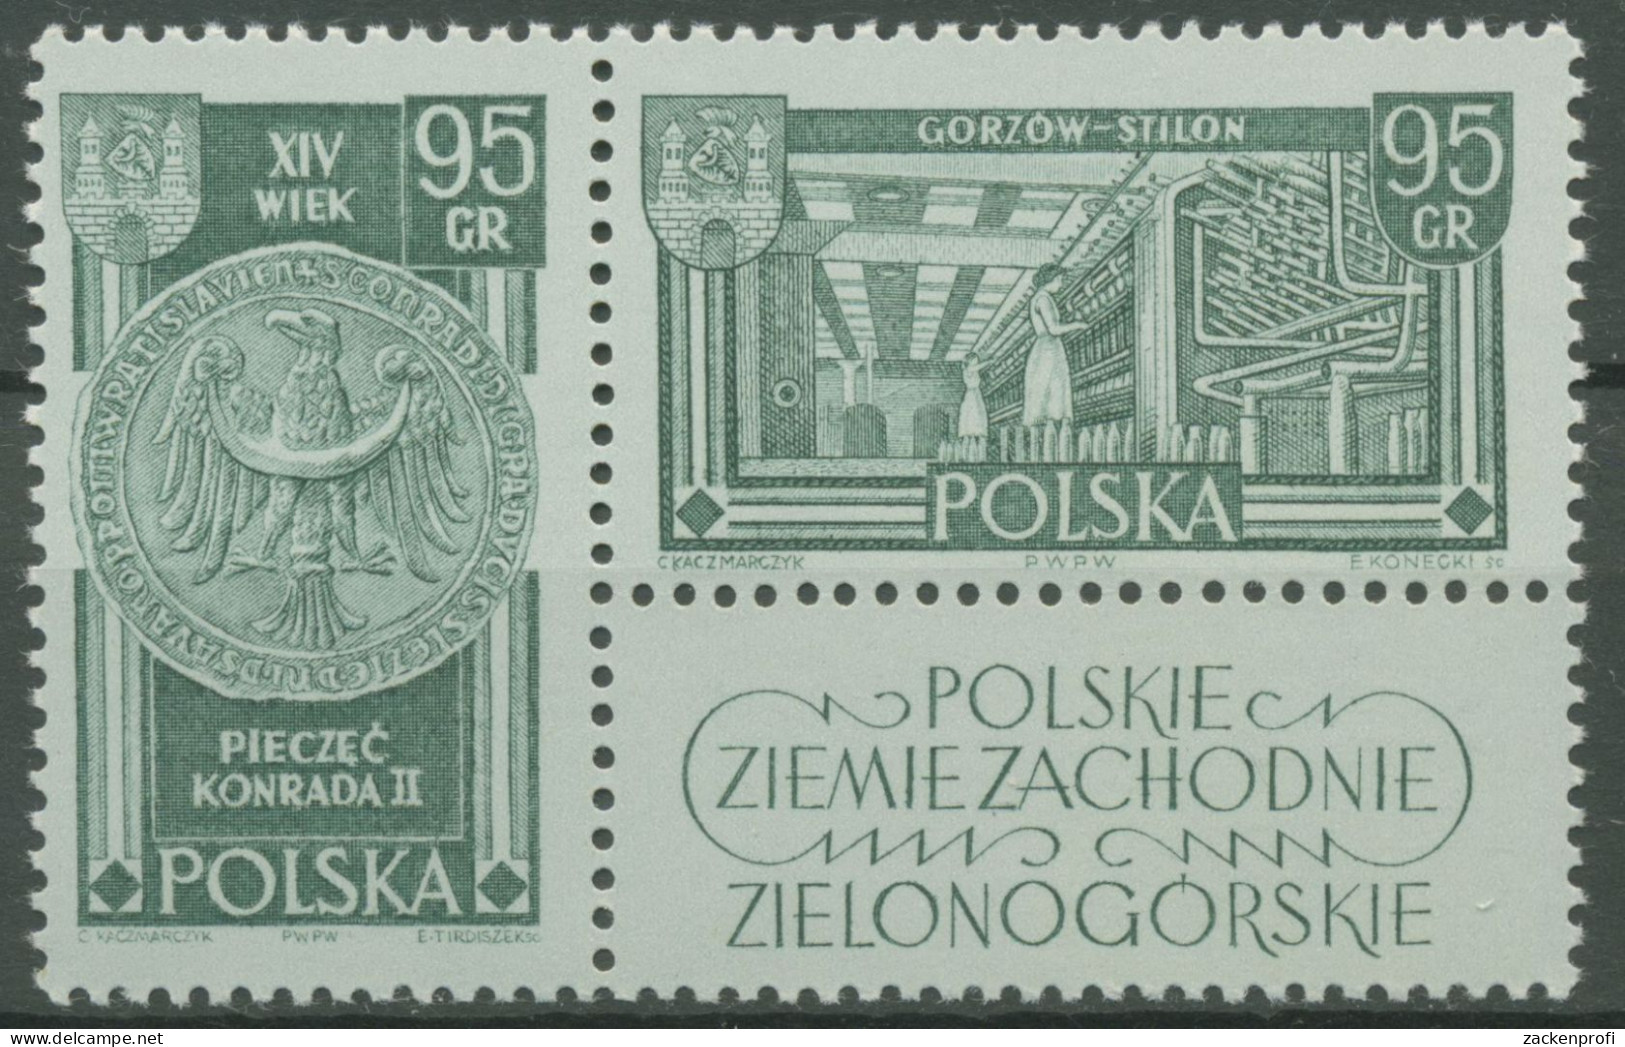 Polen 1962 Polnische Westgebiete Wappen Von Grünberg 1301/02 Zf Postfrisch - Unused Stamps